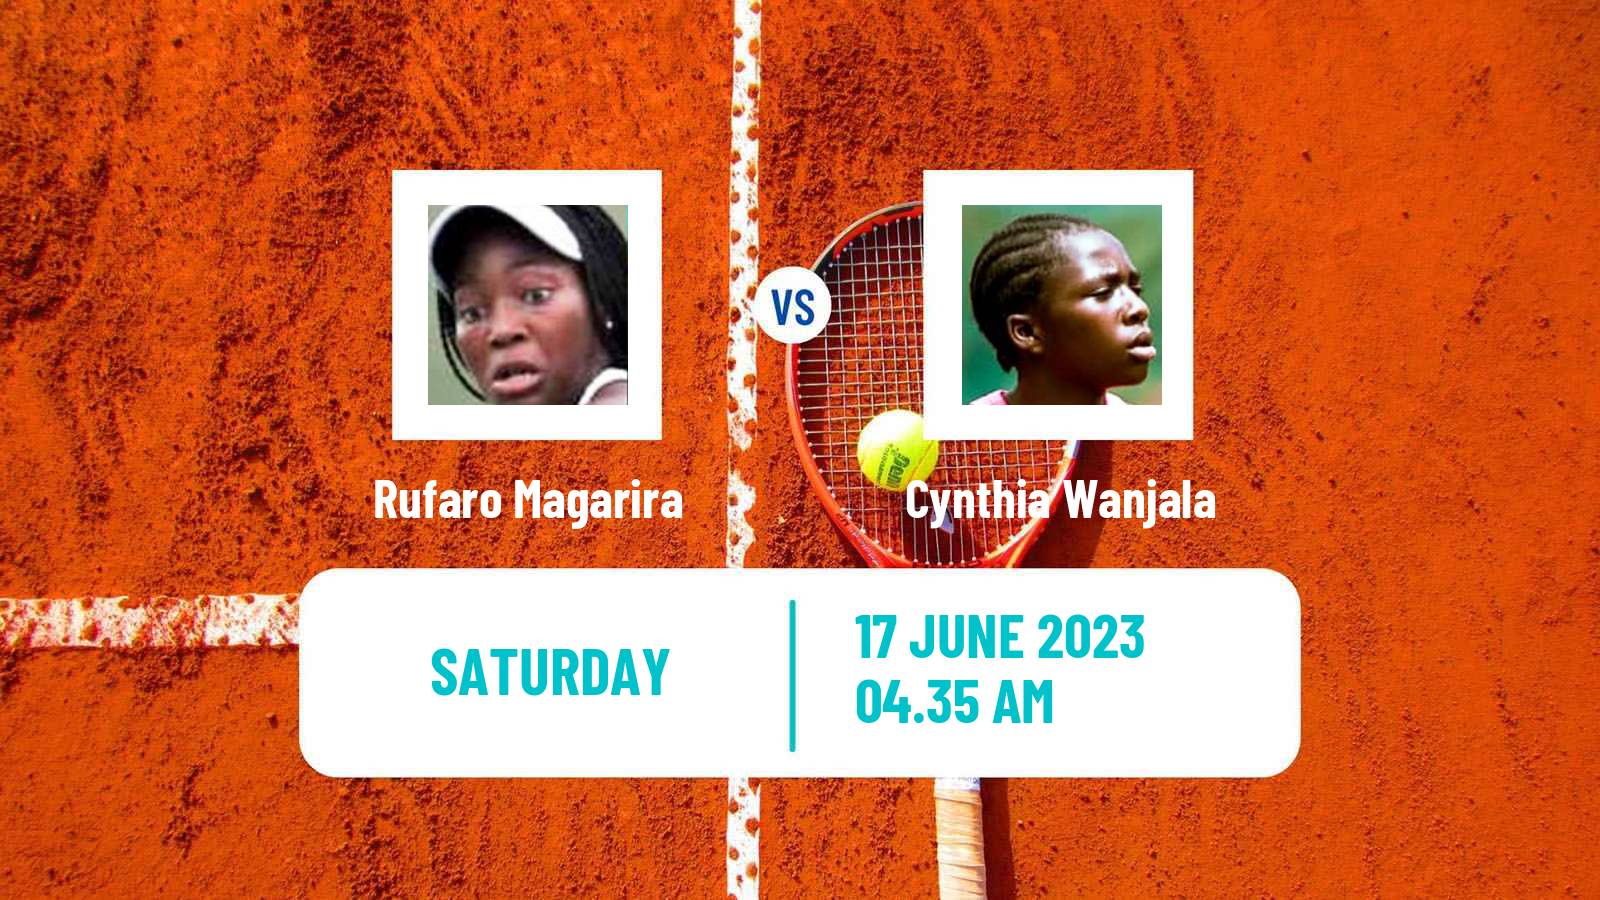 Tennis WTA Billie Jean King Cup Group III Rufaro Magarira - Cynthia Wanjala